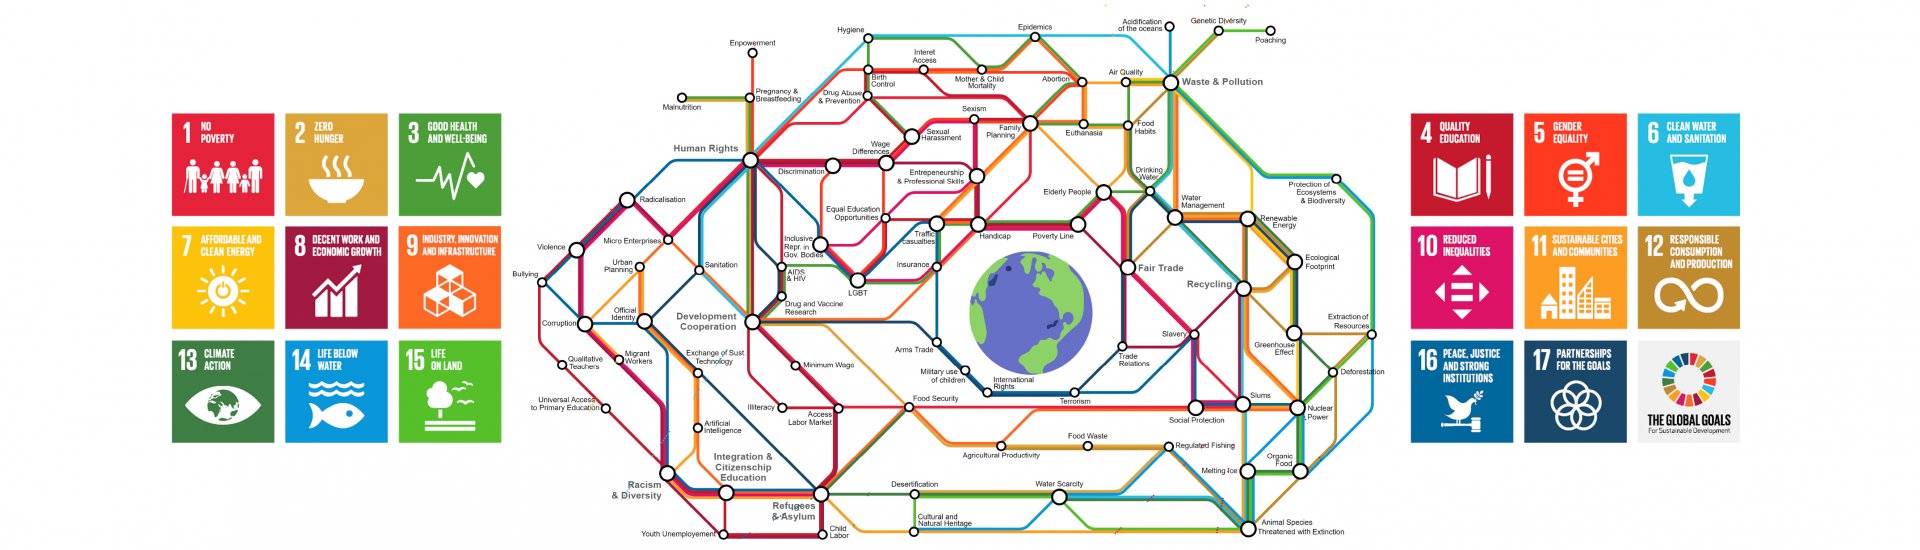 De Sustainable Development Goals weergegeven als metronet.